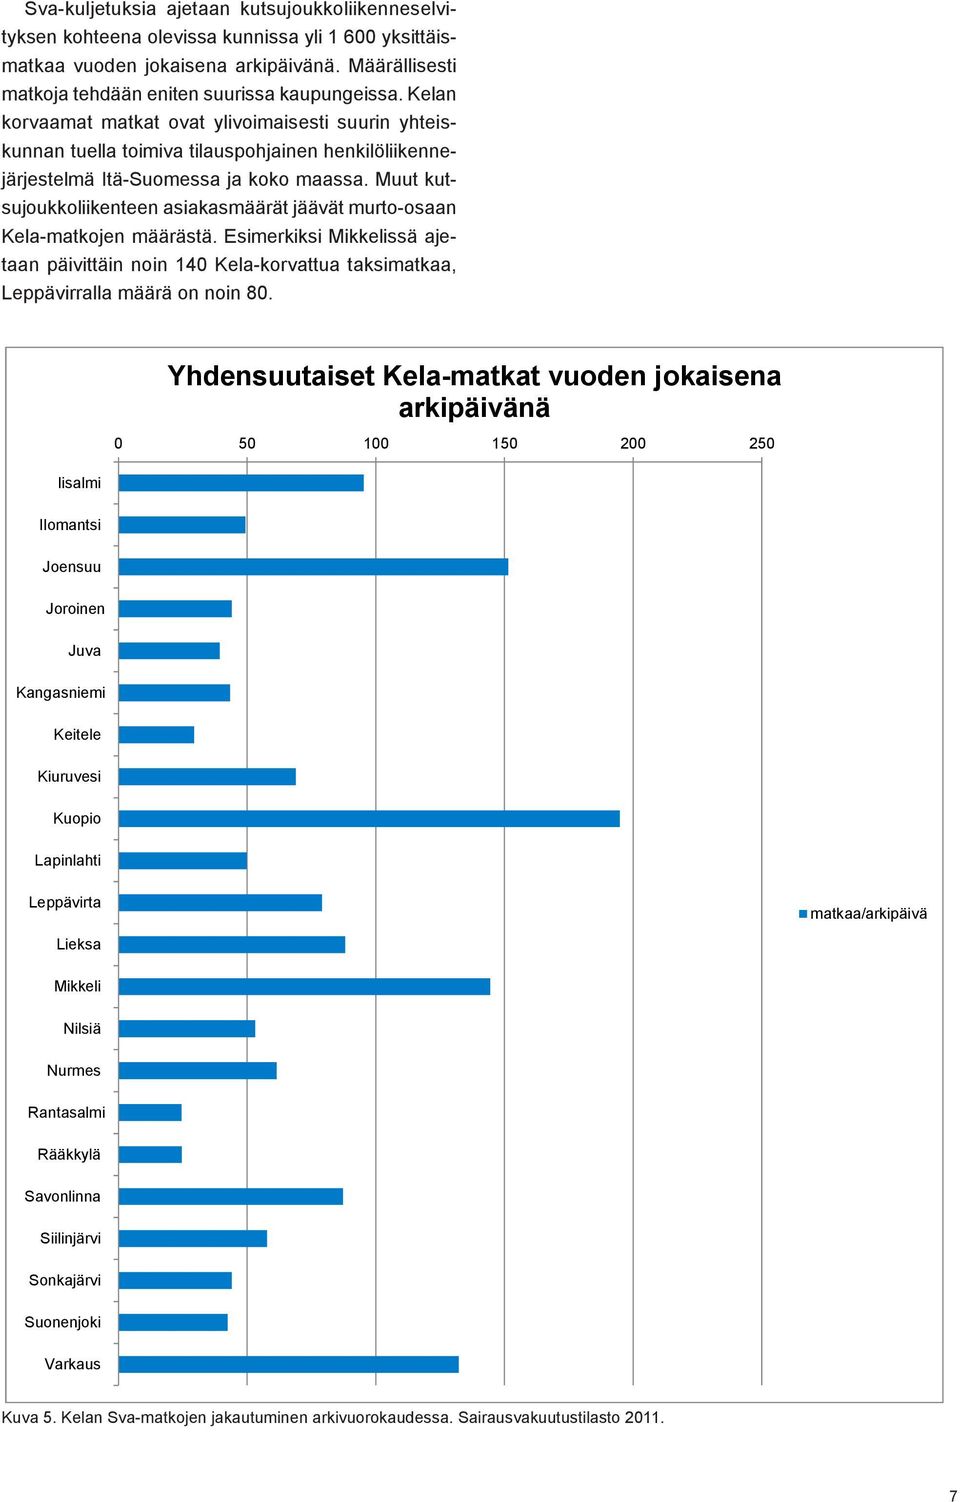 Muut kutsujoukkoliikenteen asiakasmäärät jäävät murto-osaan Kela-matkojen määrästä. Esimerkiksi Mikkelissä ajetaan päivittäin noin 140 Kela-korvattua taksimatkaa, Leppävirralla määrä on noin 80.